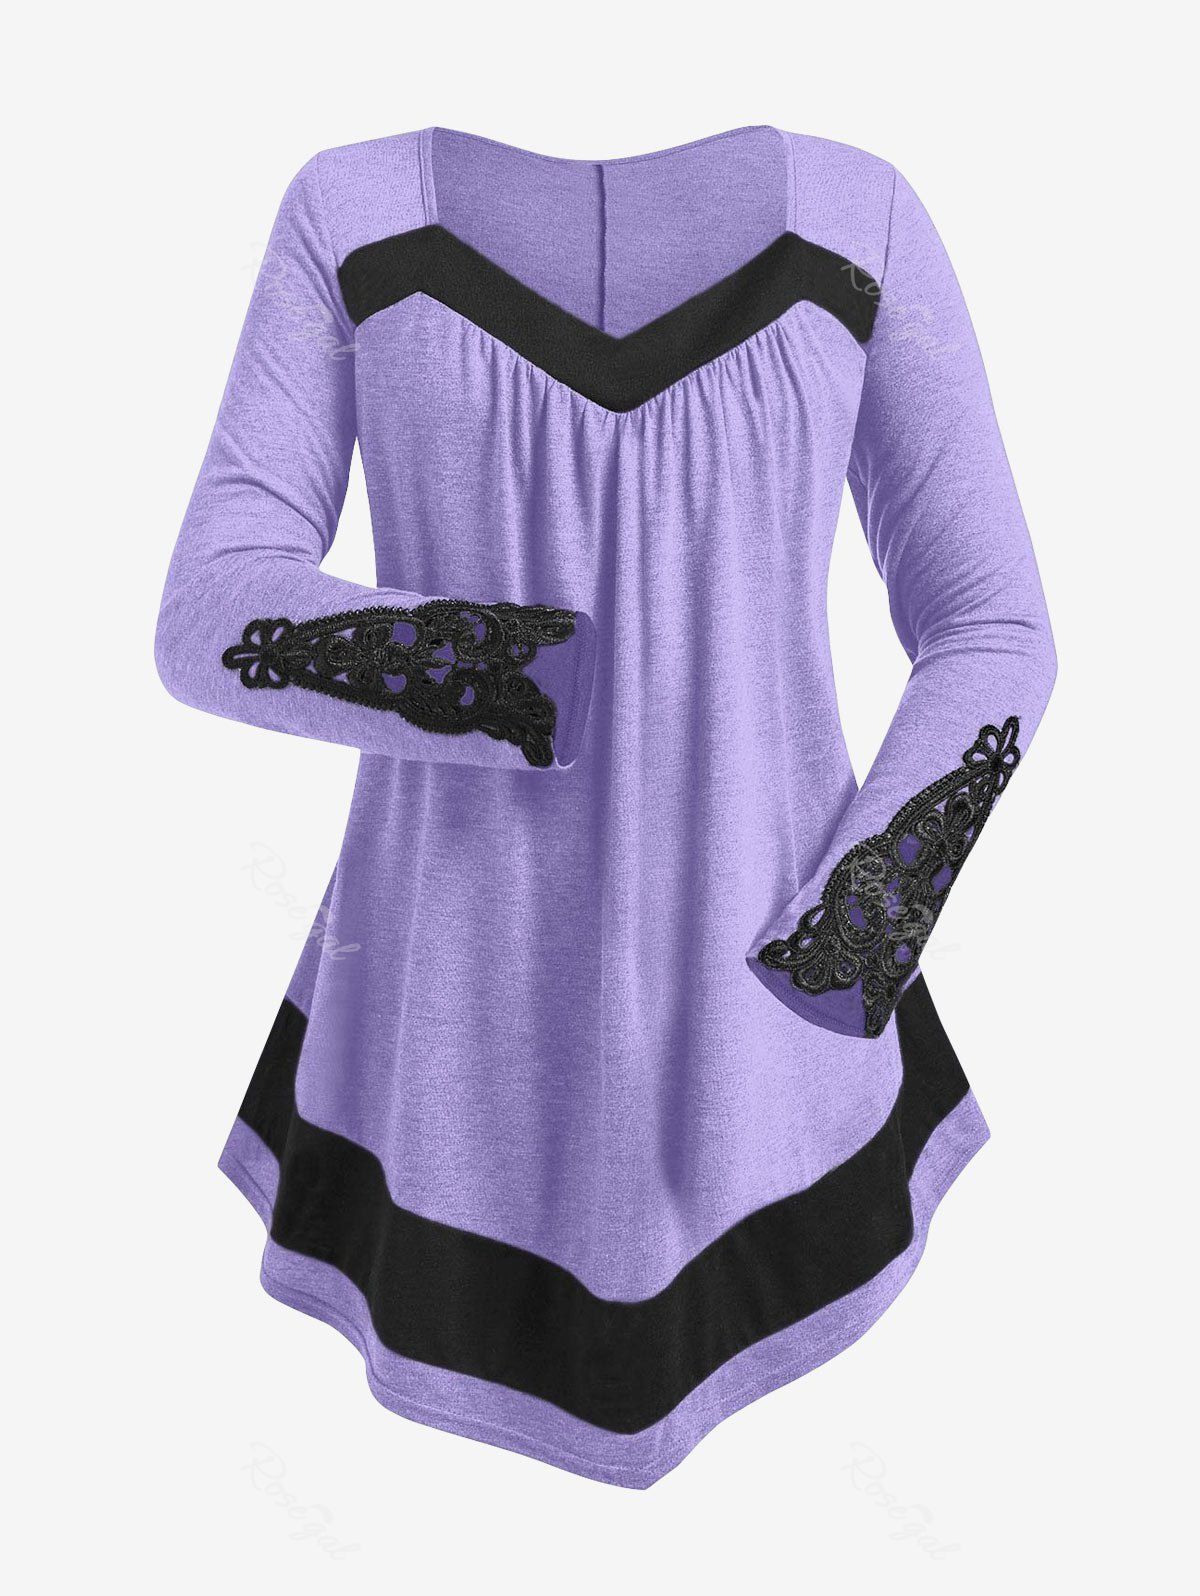 T-shirt Irrégulier en Blocs de Couleurs Au Crochet de Grande Taille Violet clair 4X